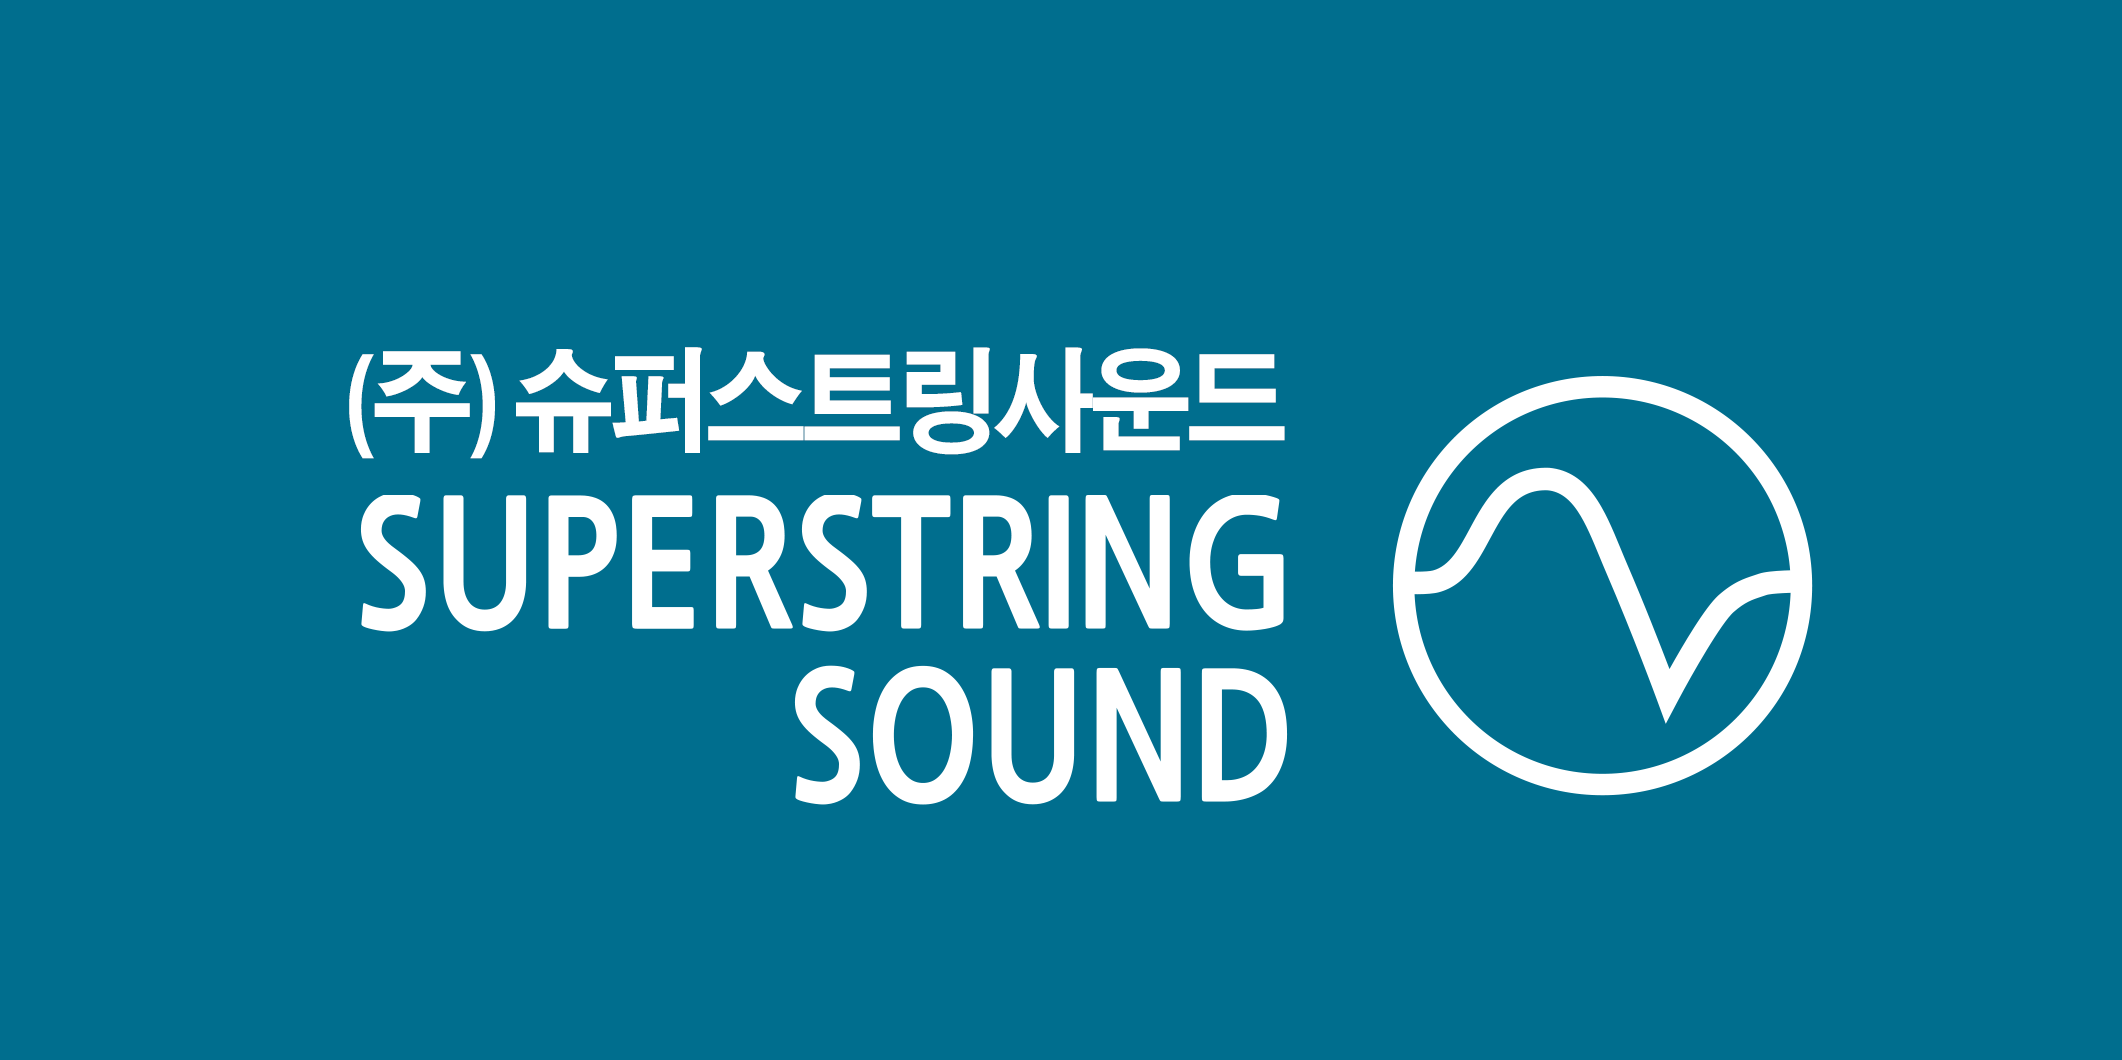 Superstring Sound logo image